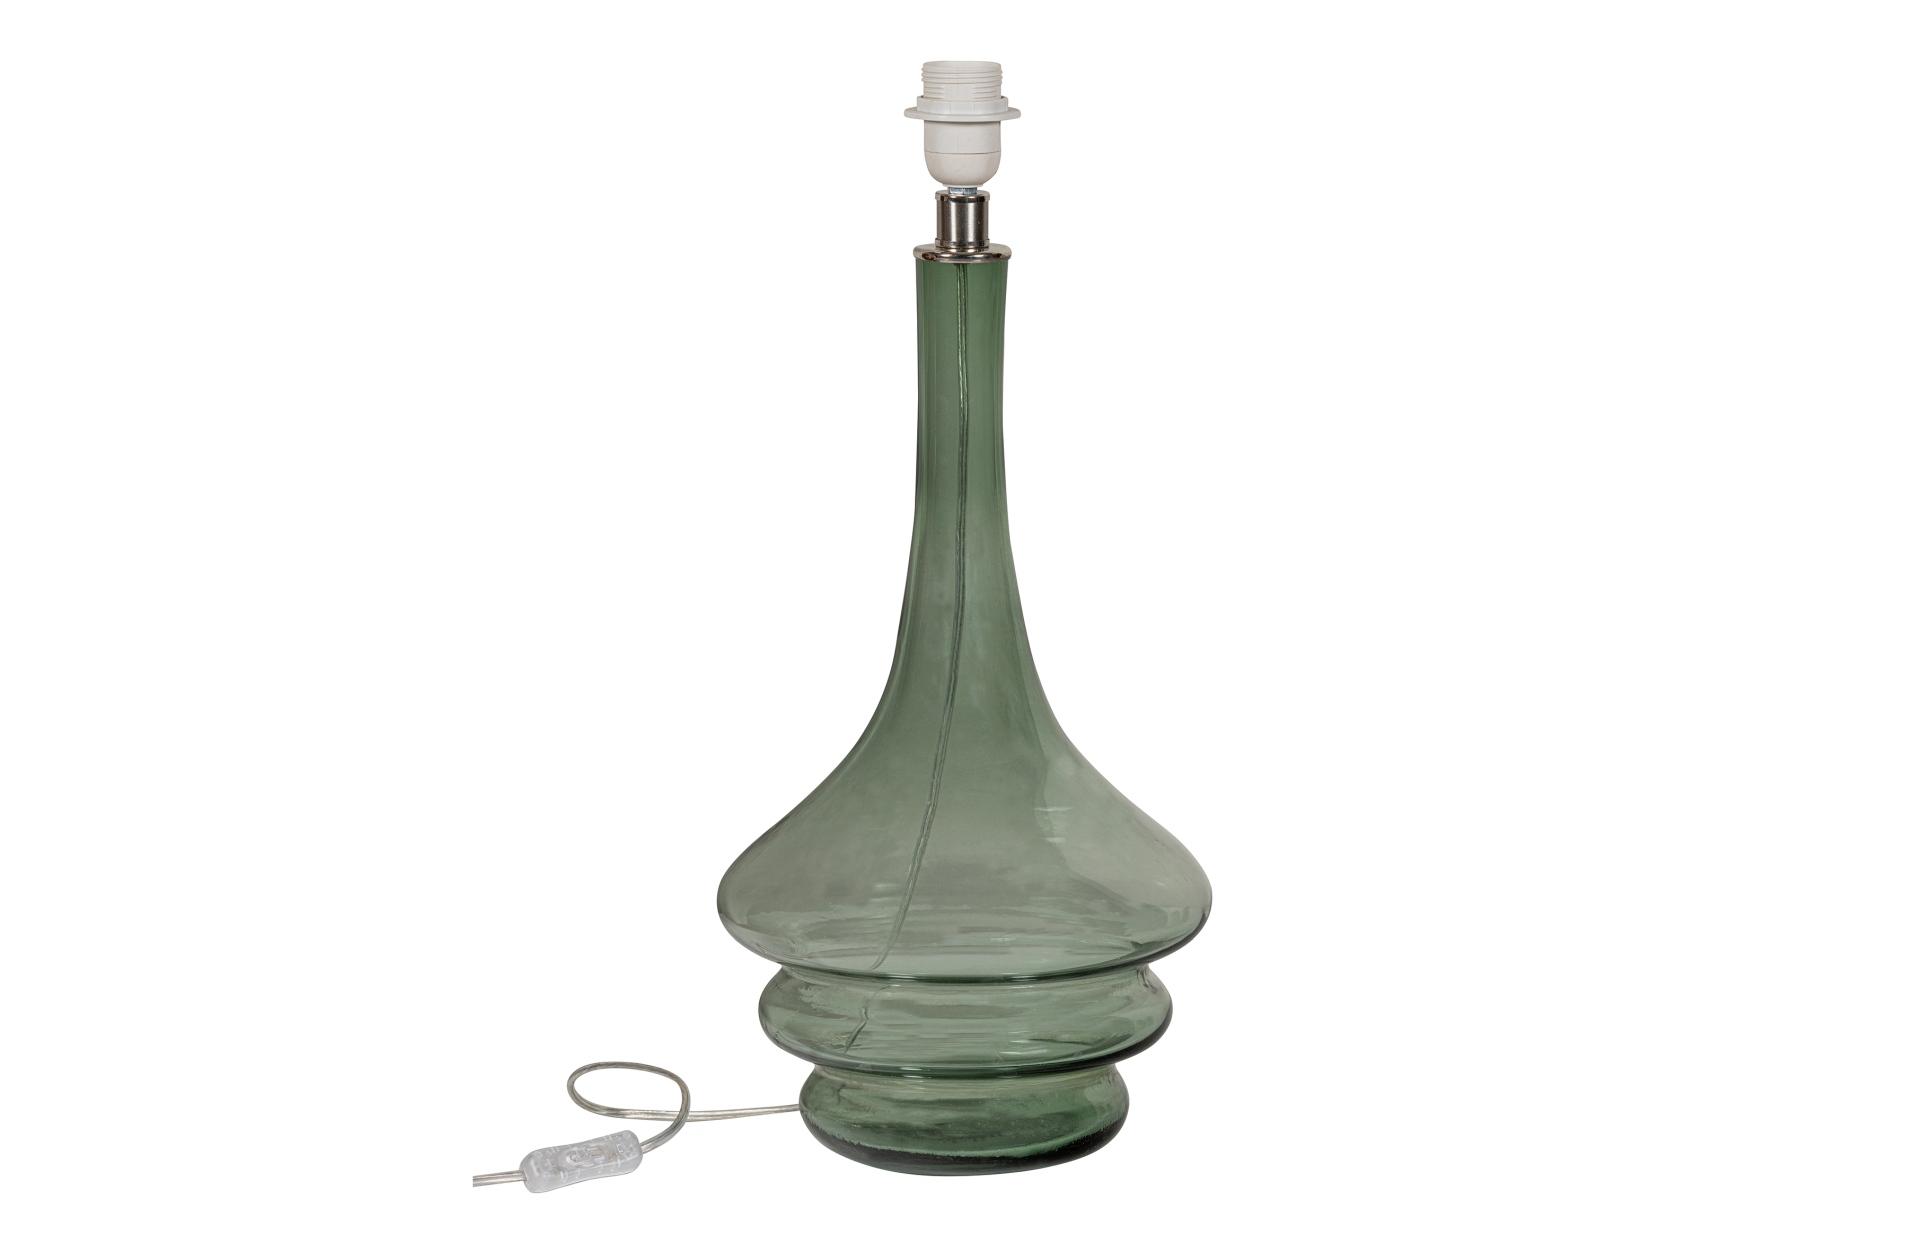 Die Tischleuchte Straw überzeugt mit ihrem modernem Deisgn. Gefertigt wurde die Lampe aus Glas, welches einen Olive Grünen Farbton besitzt.